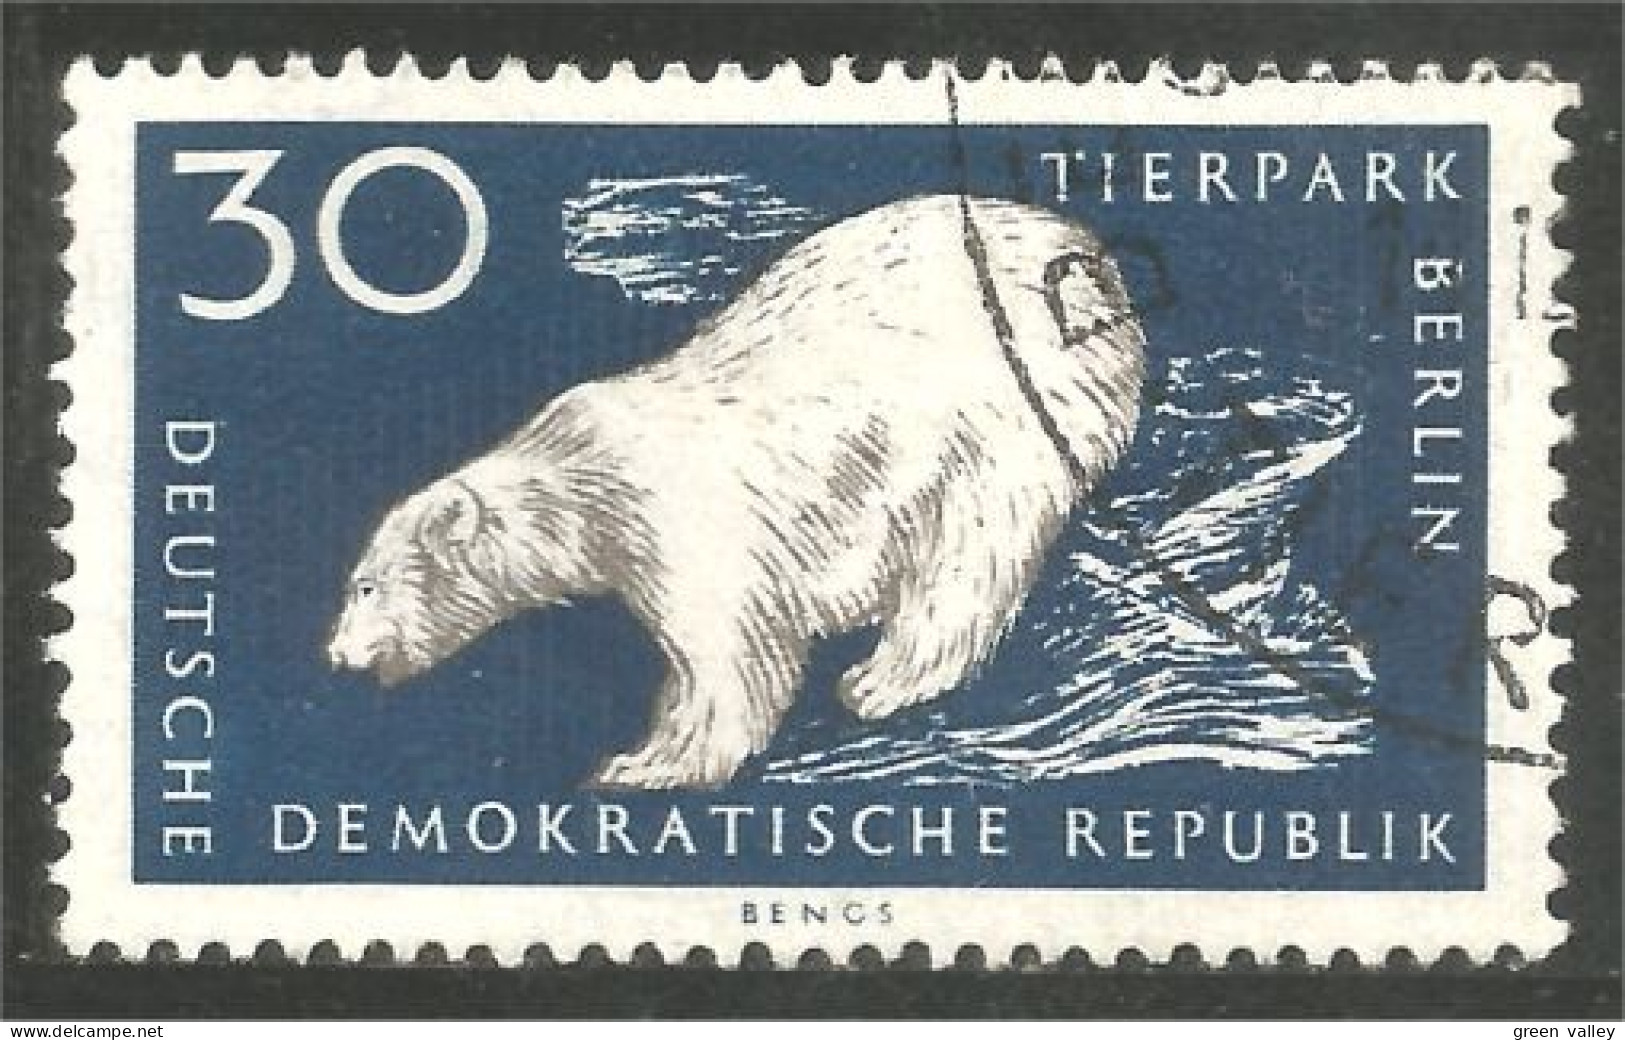 AS-162 DDR Bar Ours Polaire Polar Bear Orso Suportar Soportar Oso MNH ** Neuf SC - Beren